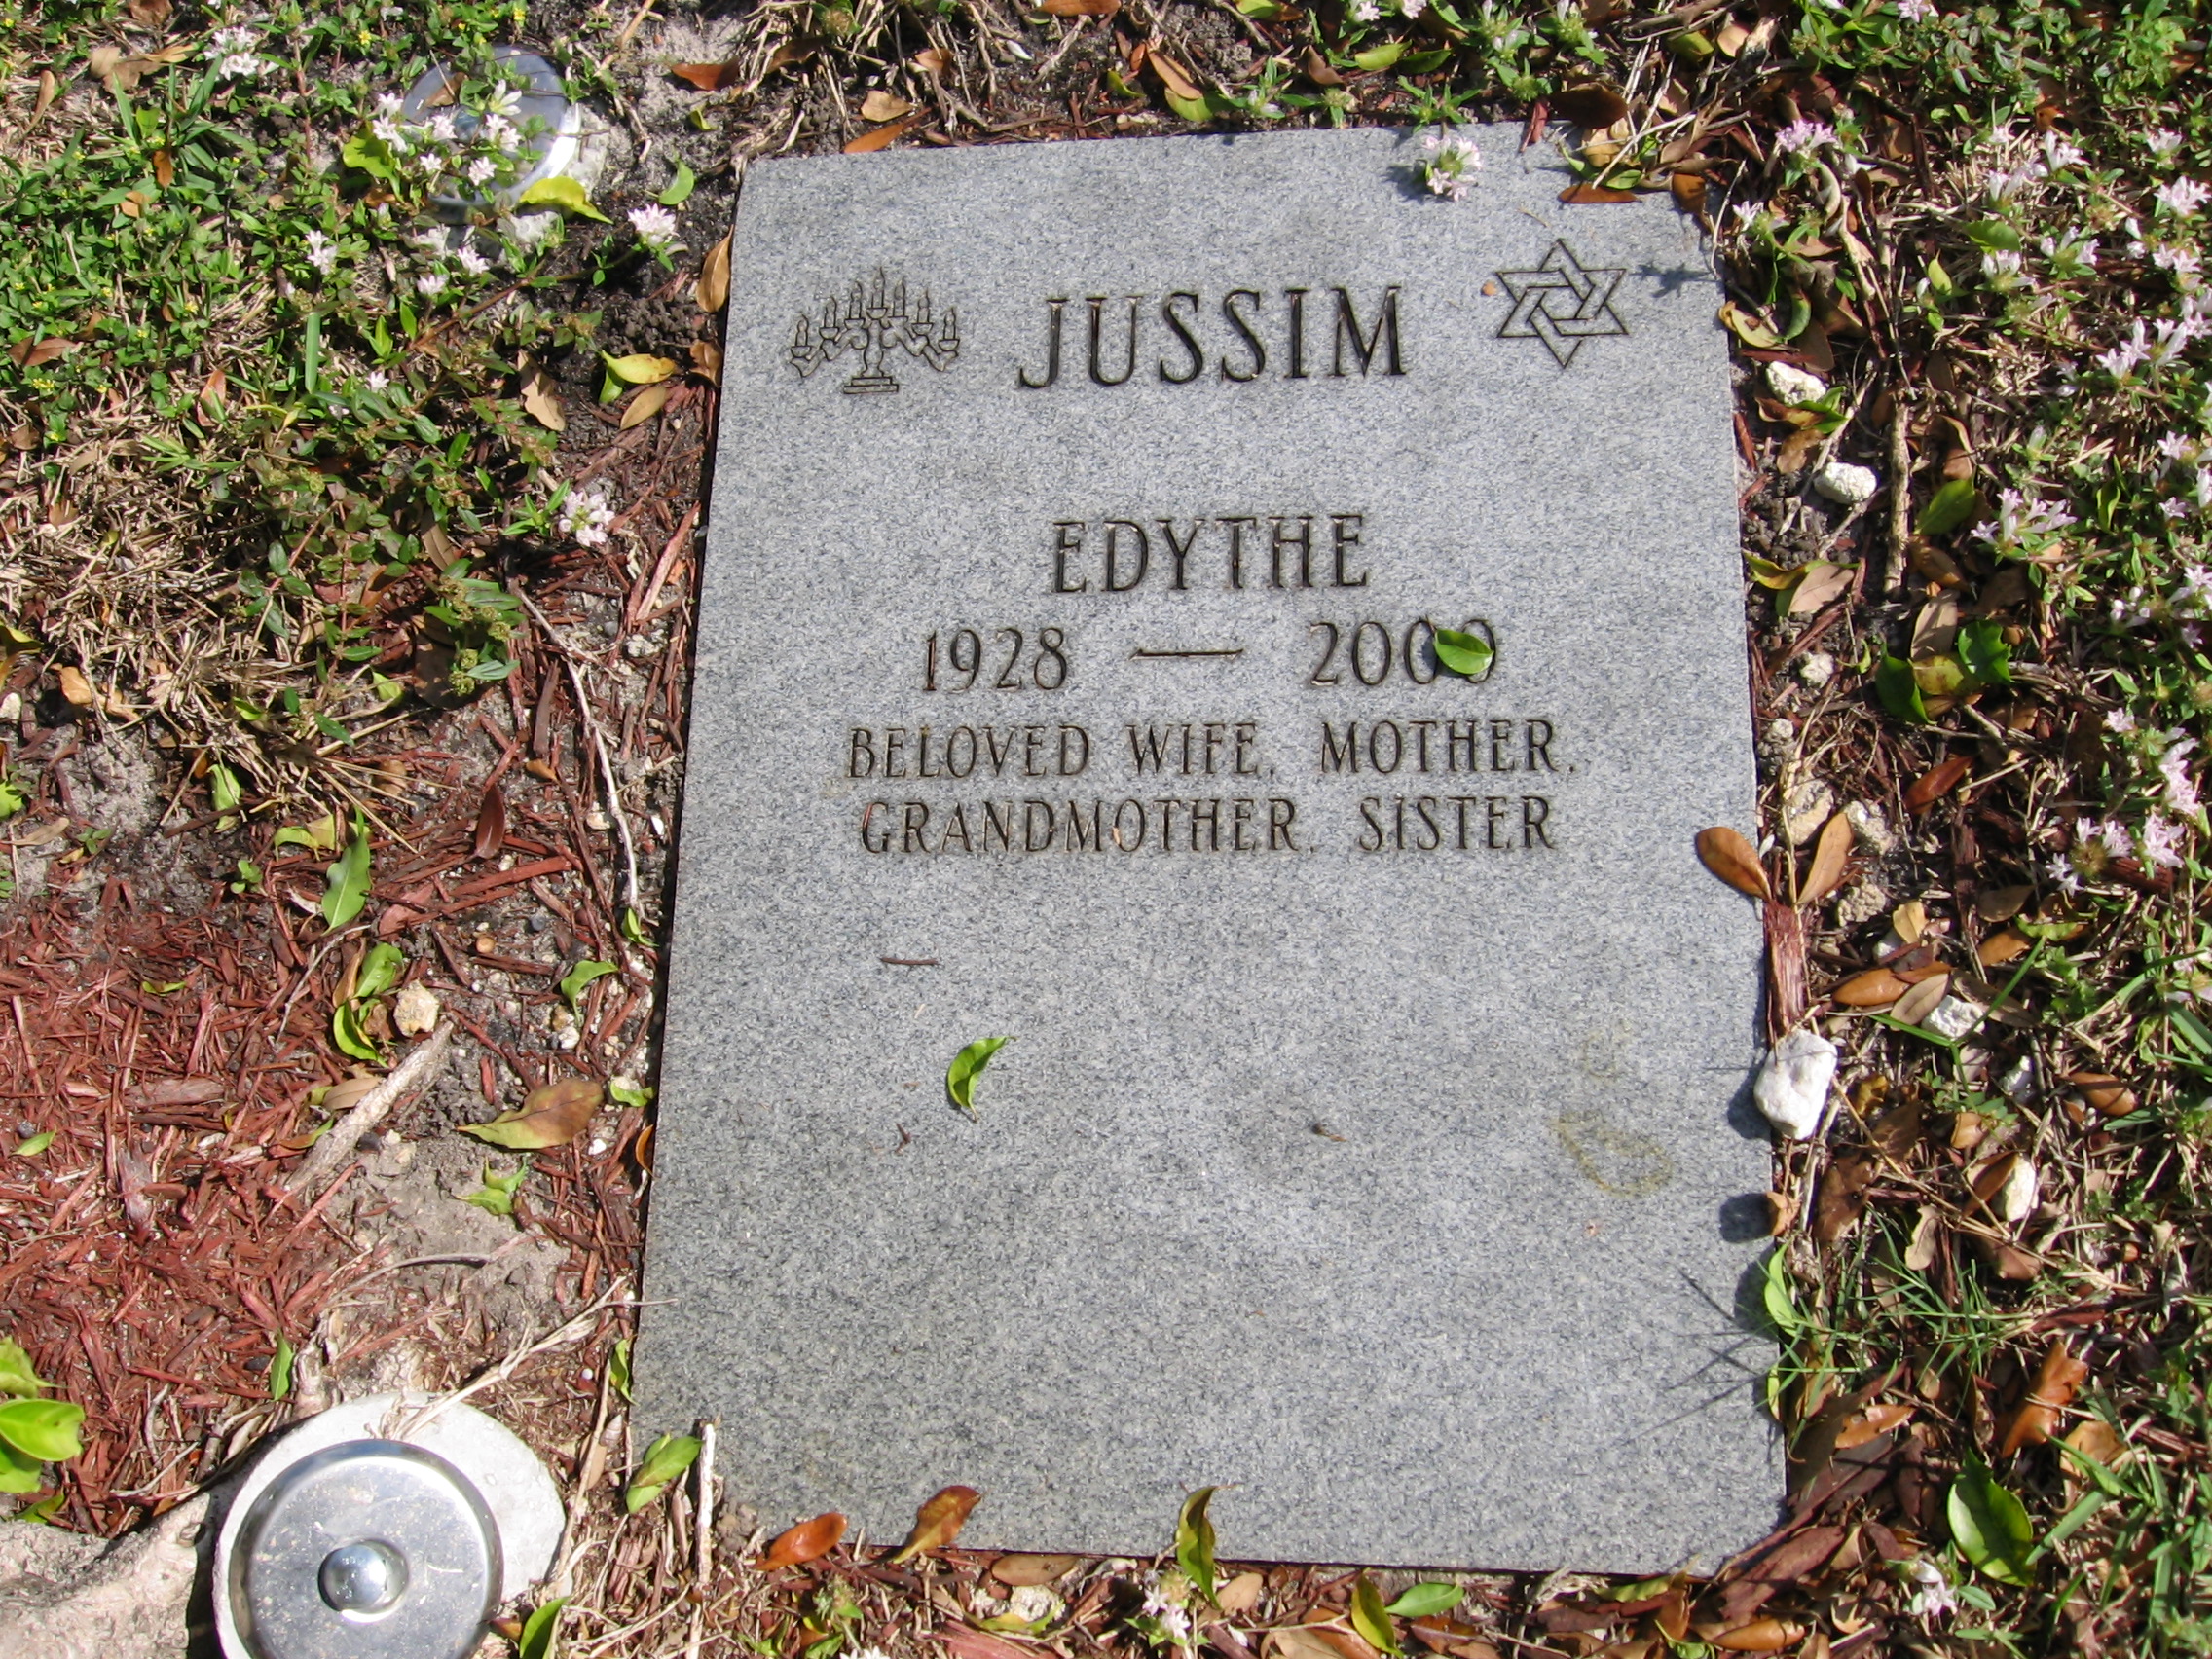 Edythe Jussim